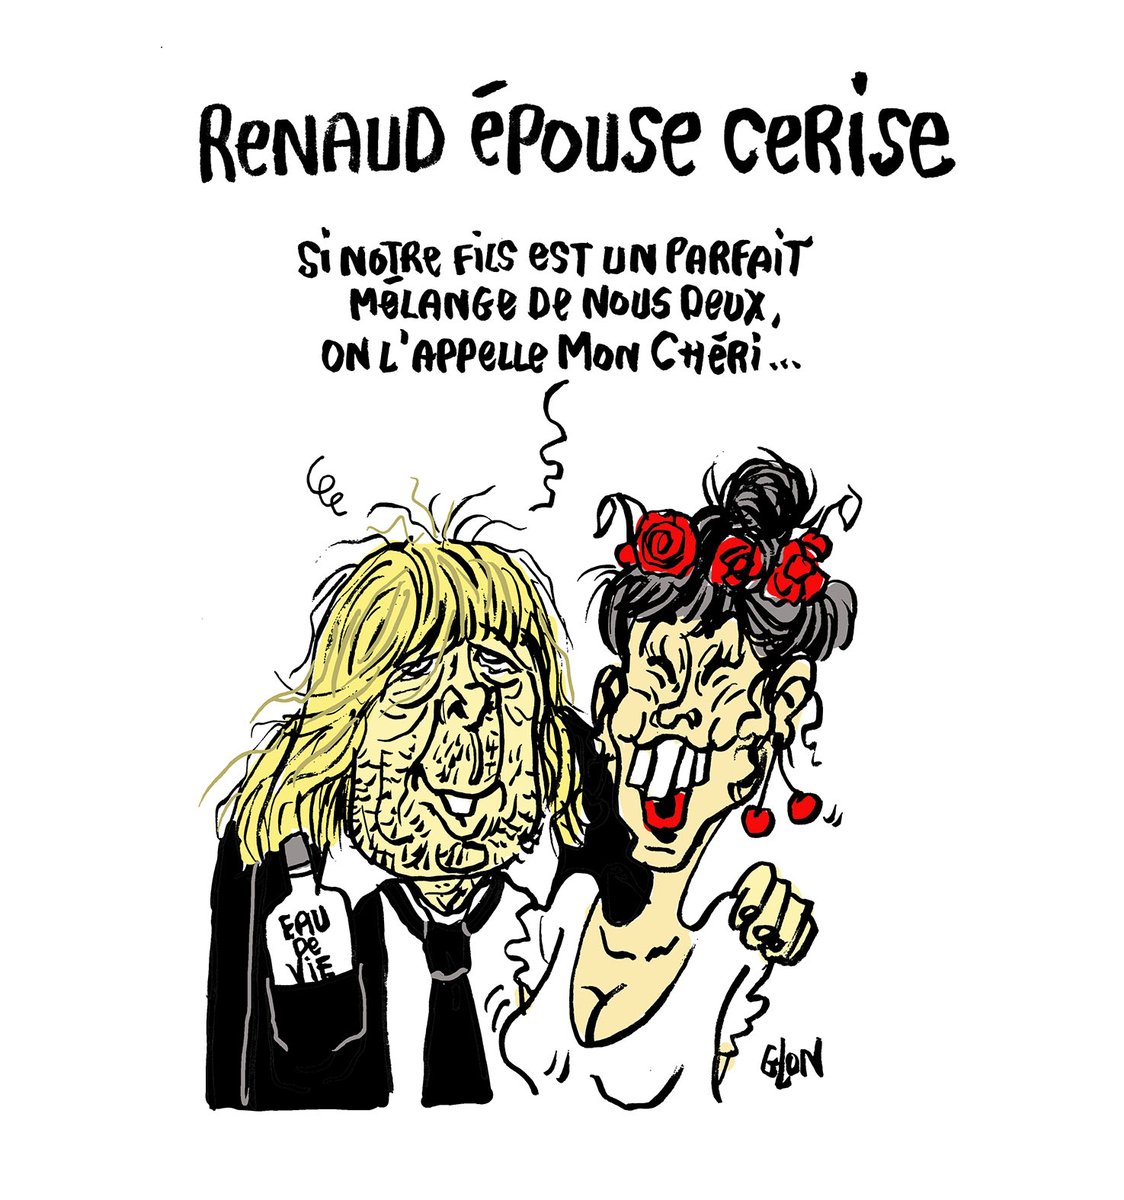 Le #DessinDePresse de Glon : Renaud épouse Cerise
Retrouvez les dessins de Glon sur : blagues-et-dessins.com
#DessinDeGlon #ActuDeGlon #Humour #Renaud #RenaudSéchan #Cerise #MonChéri #MariageRenaudCerise #ParfaitMélange